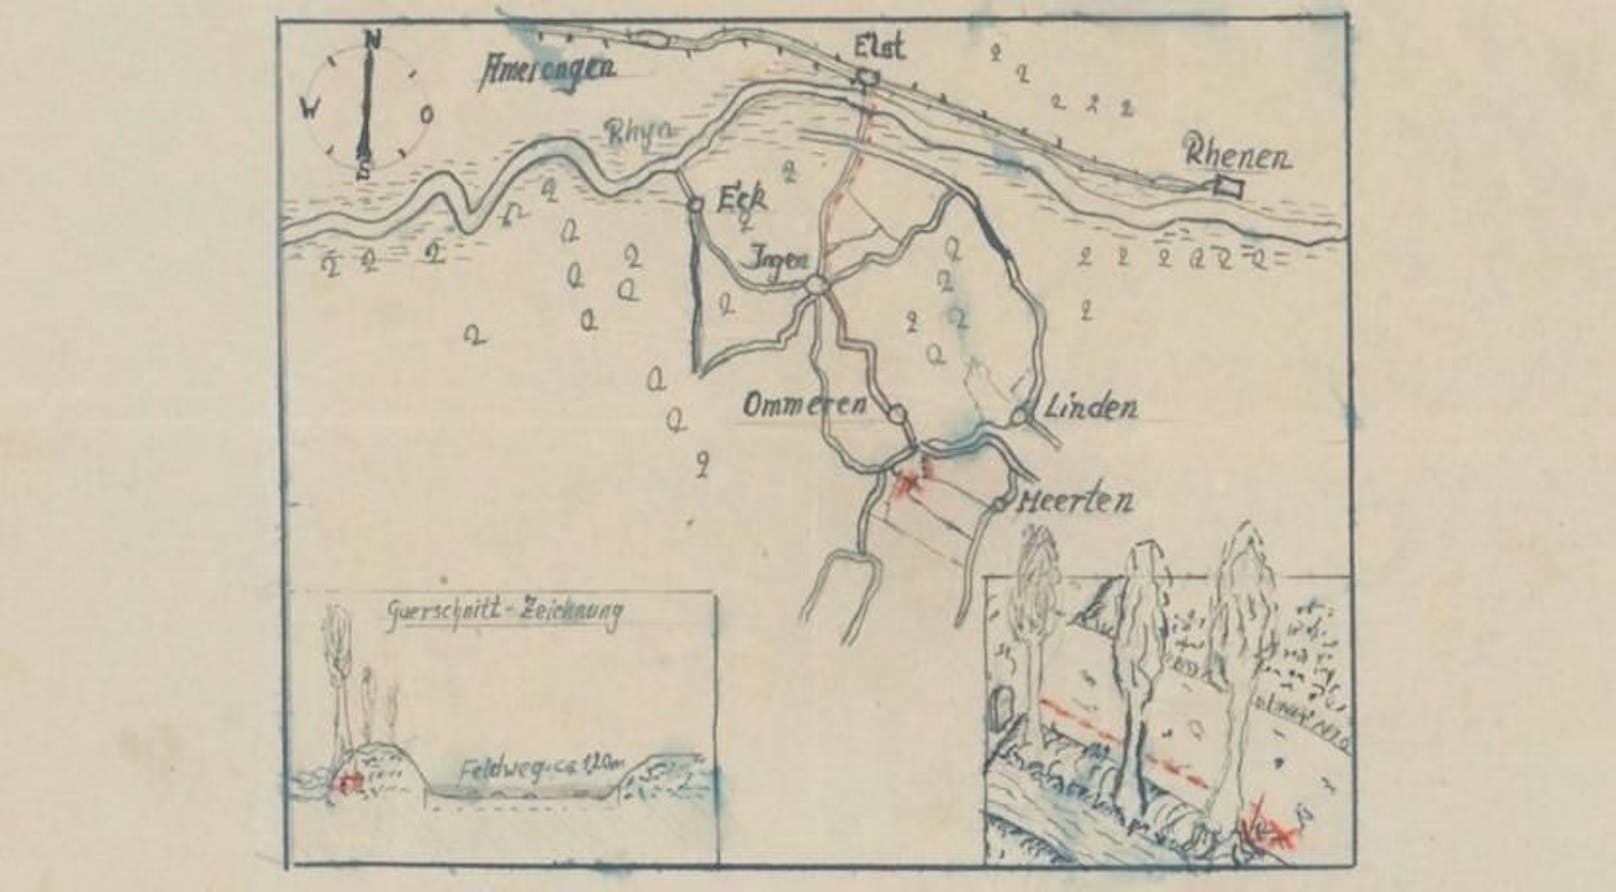 Diese Karte aus dem Zweiten Weltkrieg könnte den Standort eines Schatzes zeigen.